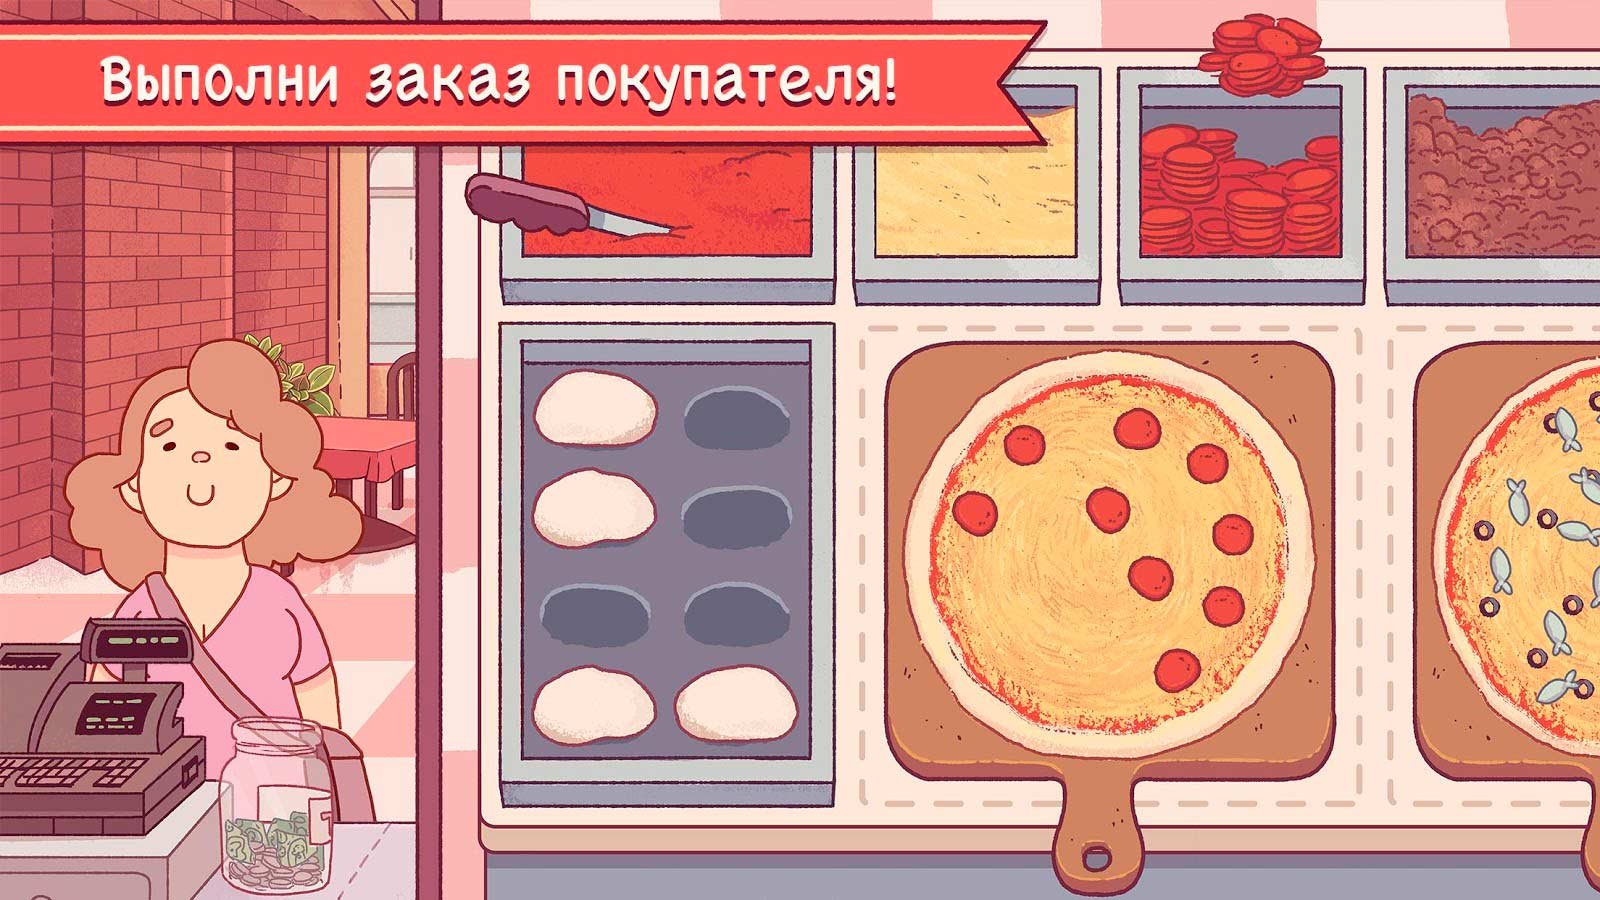 игра пицца скачать бесплатно на андроид последняя версия фото 7